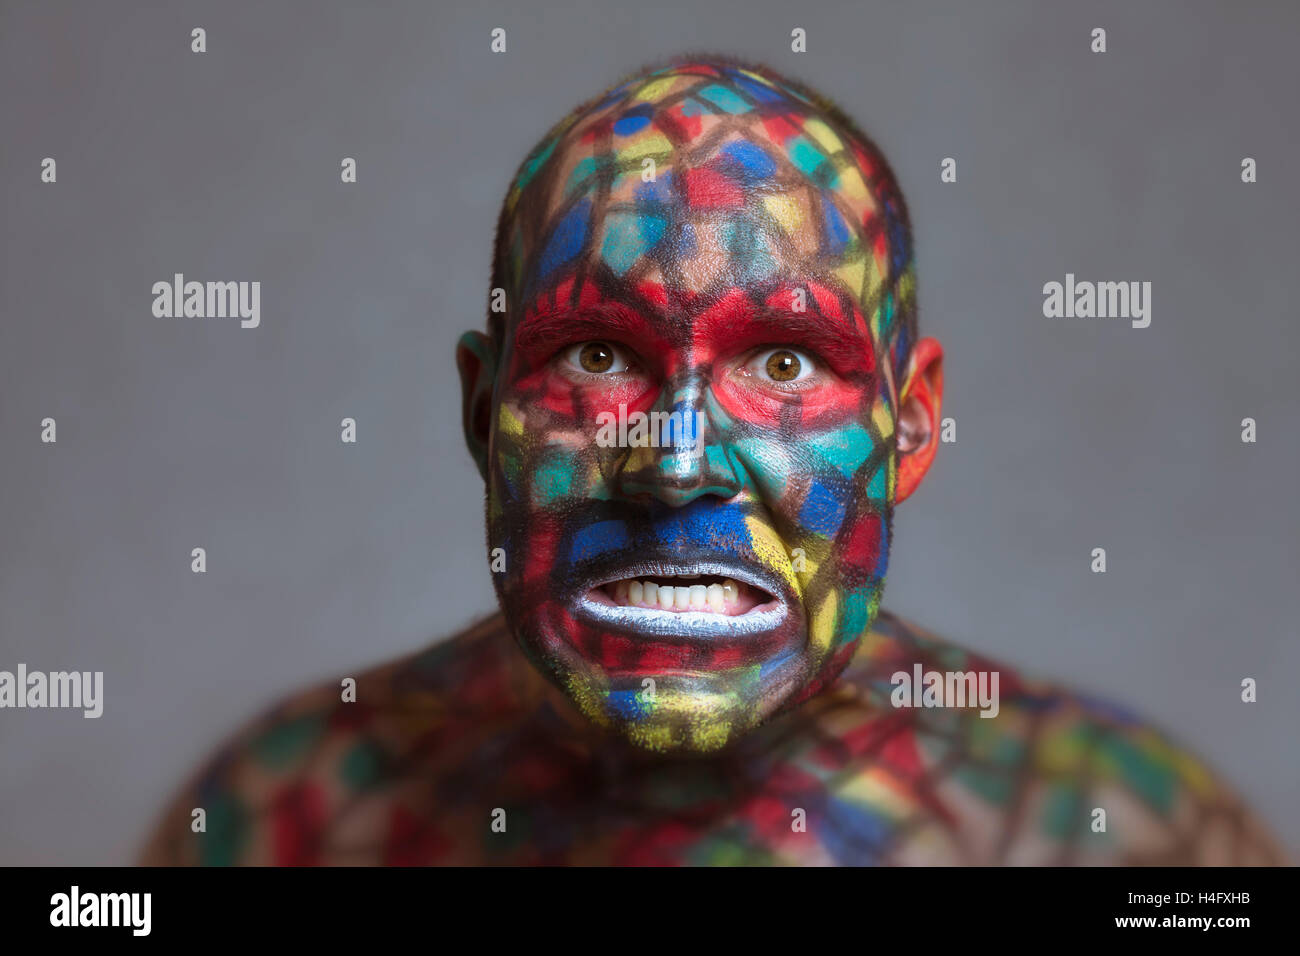 Furious villain portrait, colorful face art with tilt shift and motion blur effect. Stock Photo